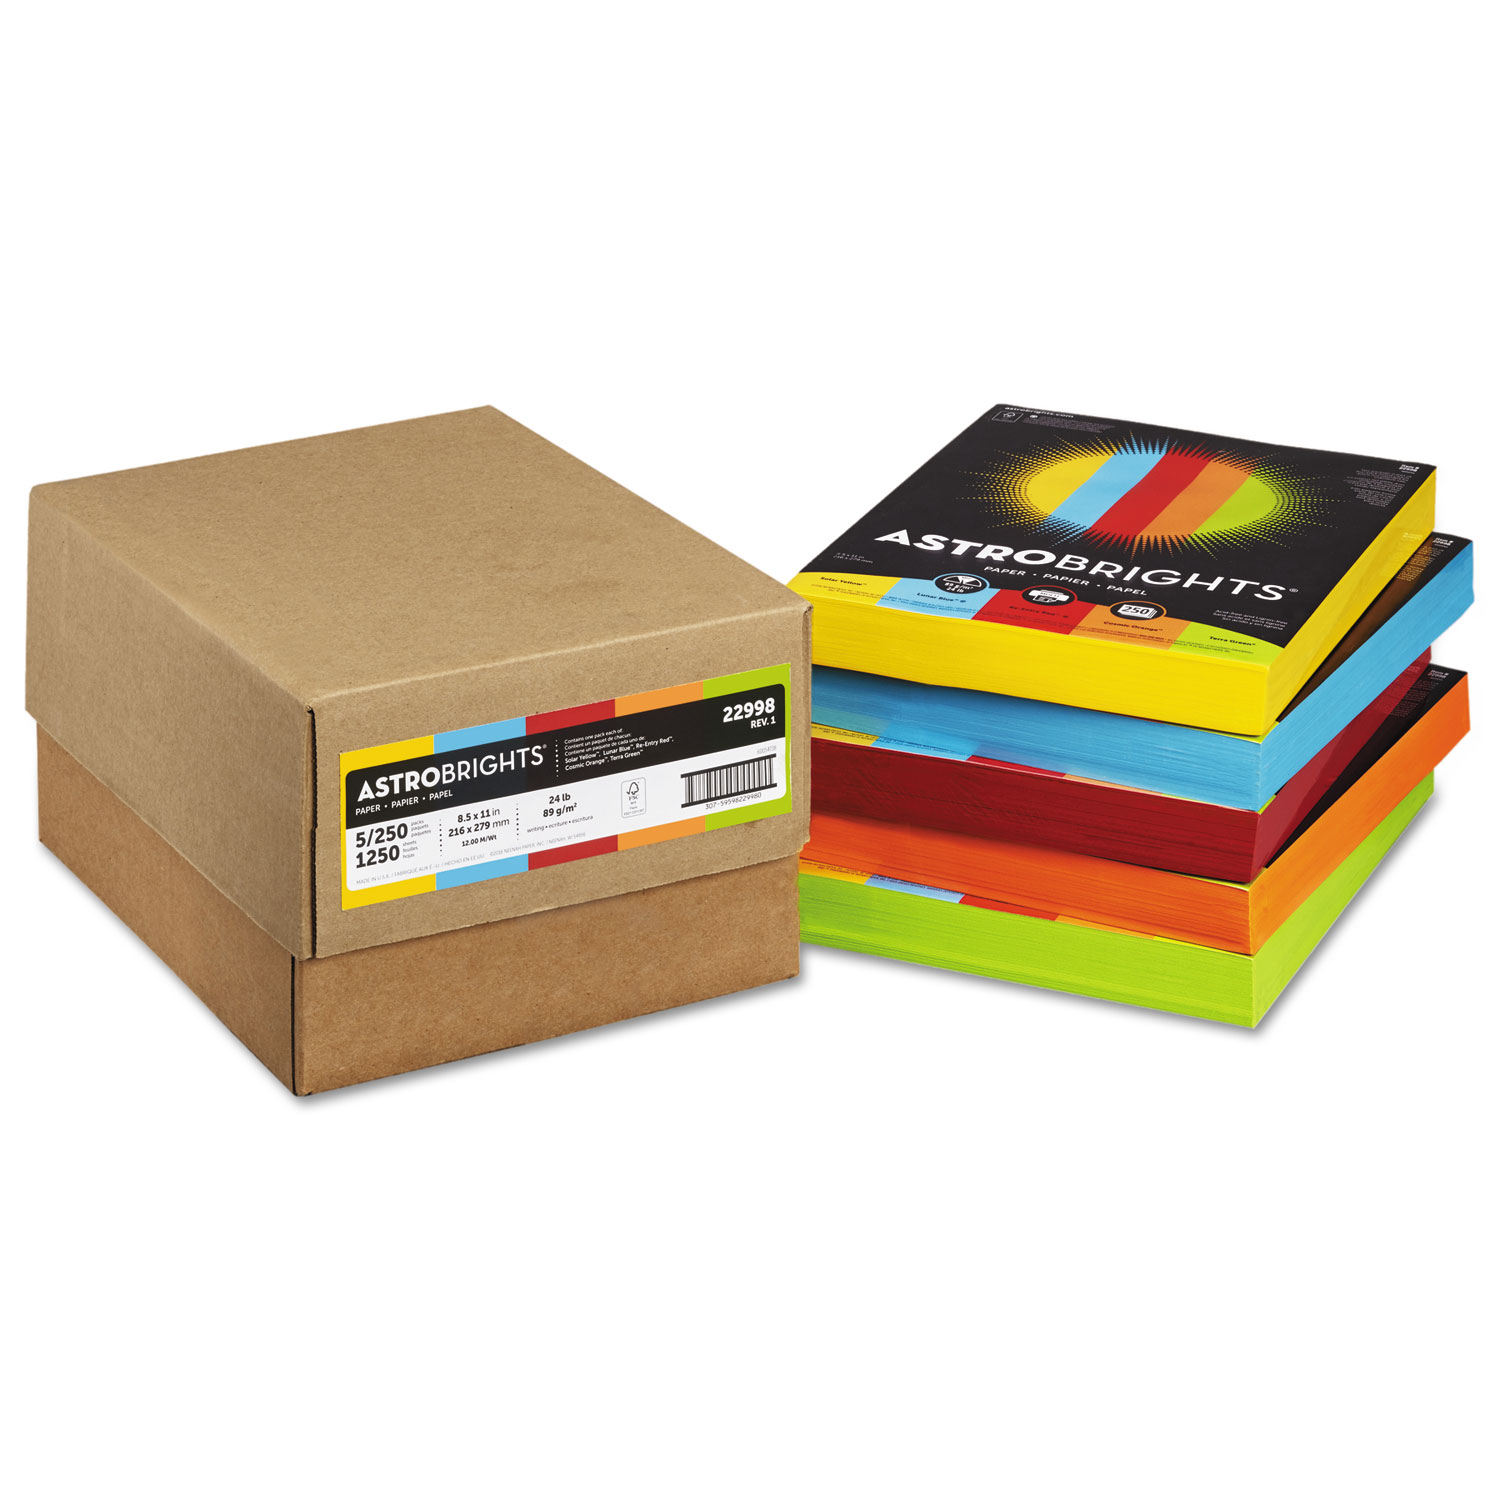  Astrobrights 22998 Color Paper - Five-Color Mixed Carton, 24lb, 8.5 x 11, Assorted, 250 Sheets/Ream, 5 Reams/Carton (WAU22998) 